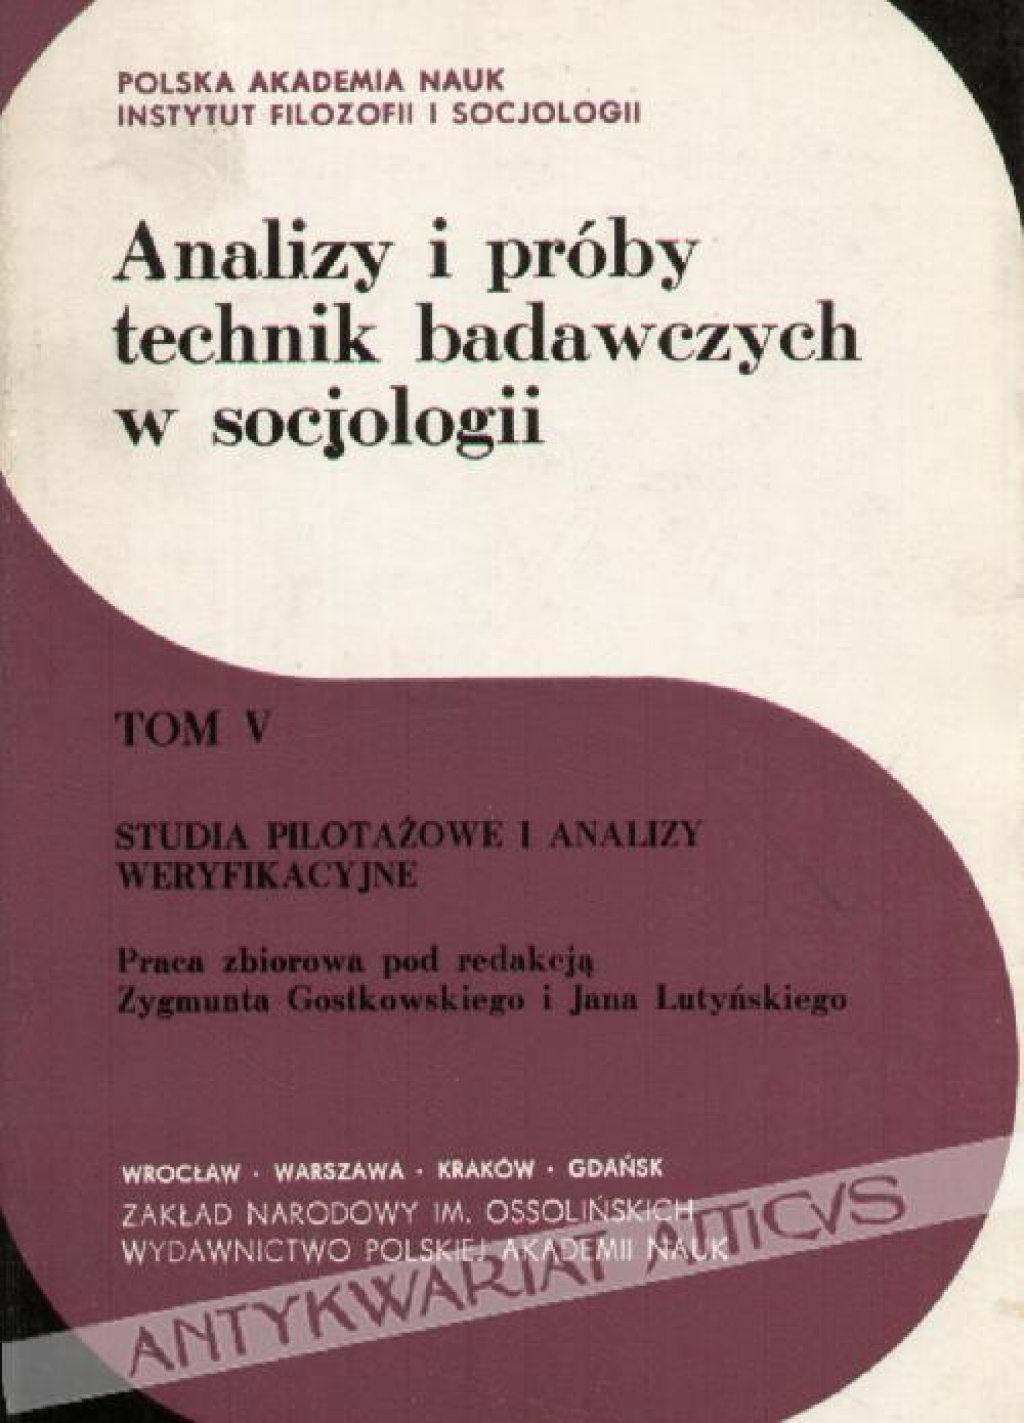 Analizy i próby technik badawczych w socjologii Tom V, Studia pilotażowe i analizy weryfikacyjne